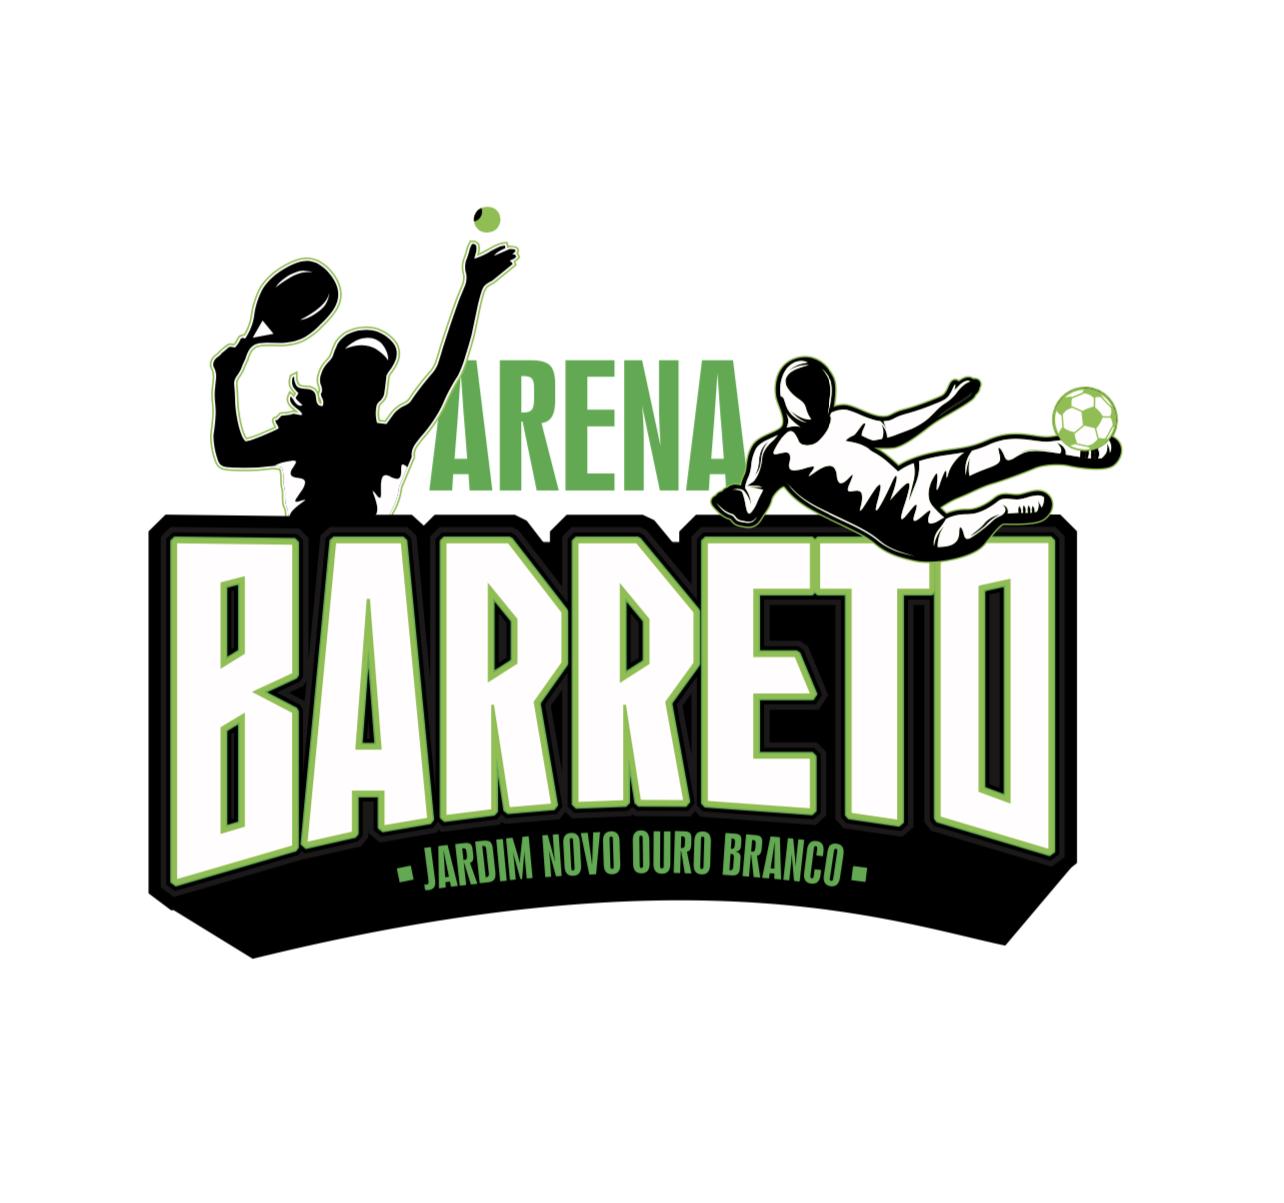 Arena Barreto